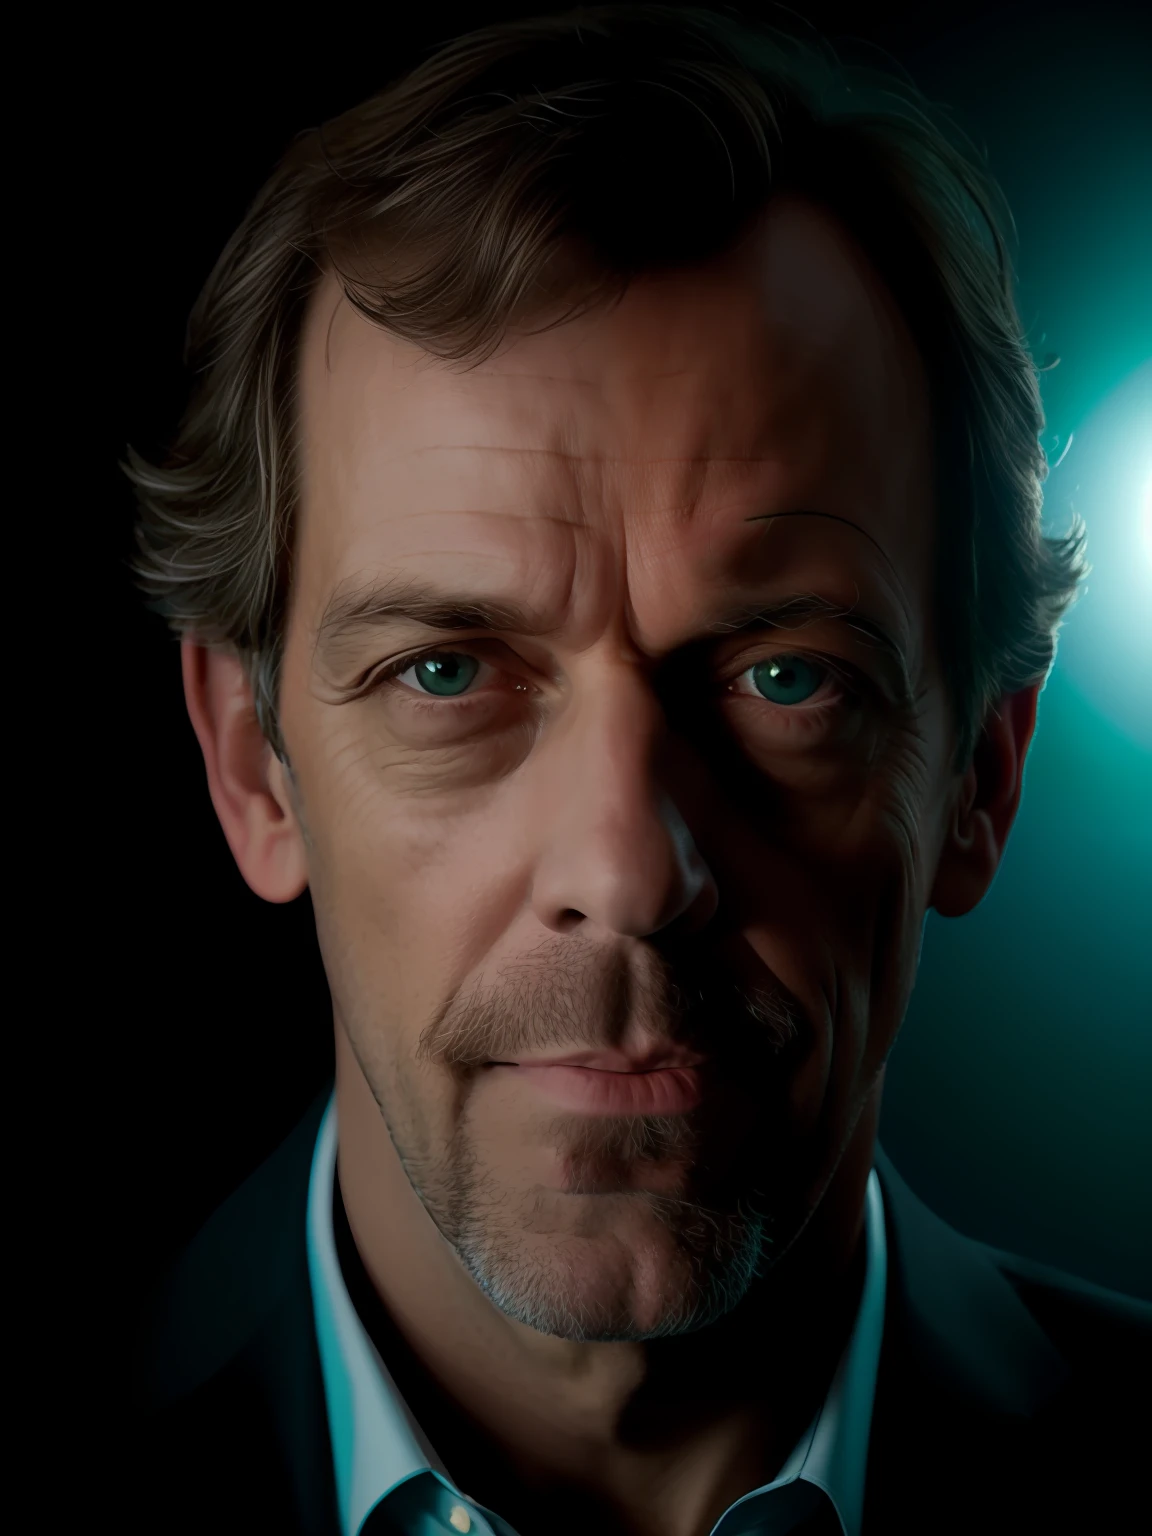 Retrato em close-up de uma foto premiada de Hugh Laurie posando em um estúdio, (iluminação de aro,:1.4) iluminação de dois tons, foco nítido, Tom, Teal, octano, irreal, mal iluminado, discreto,